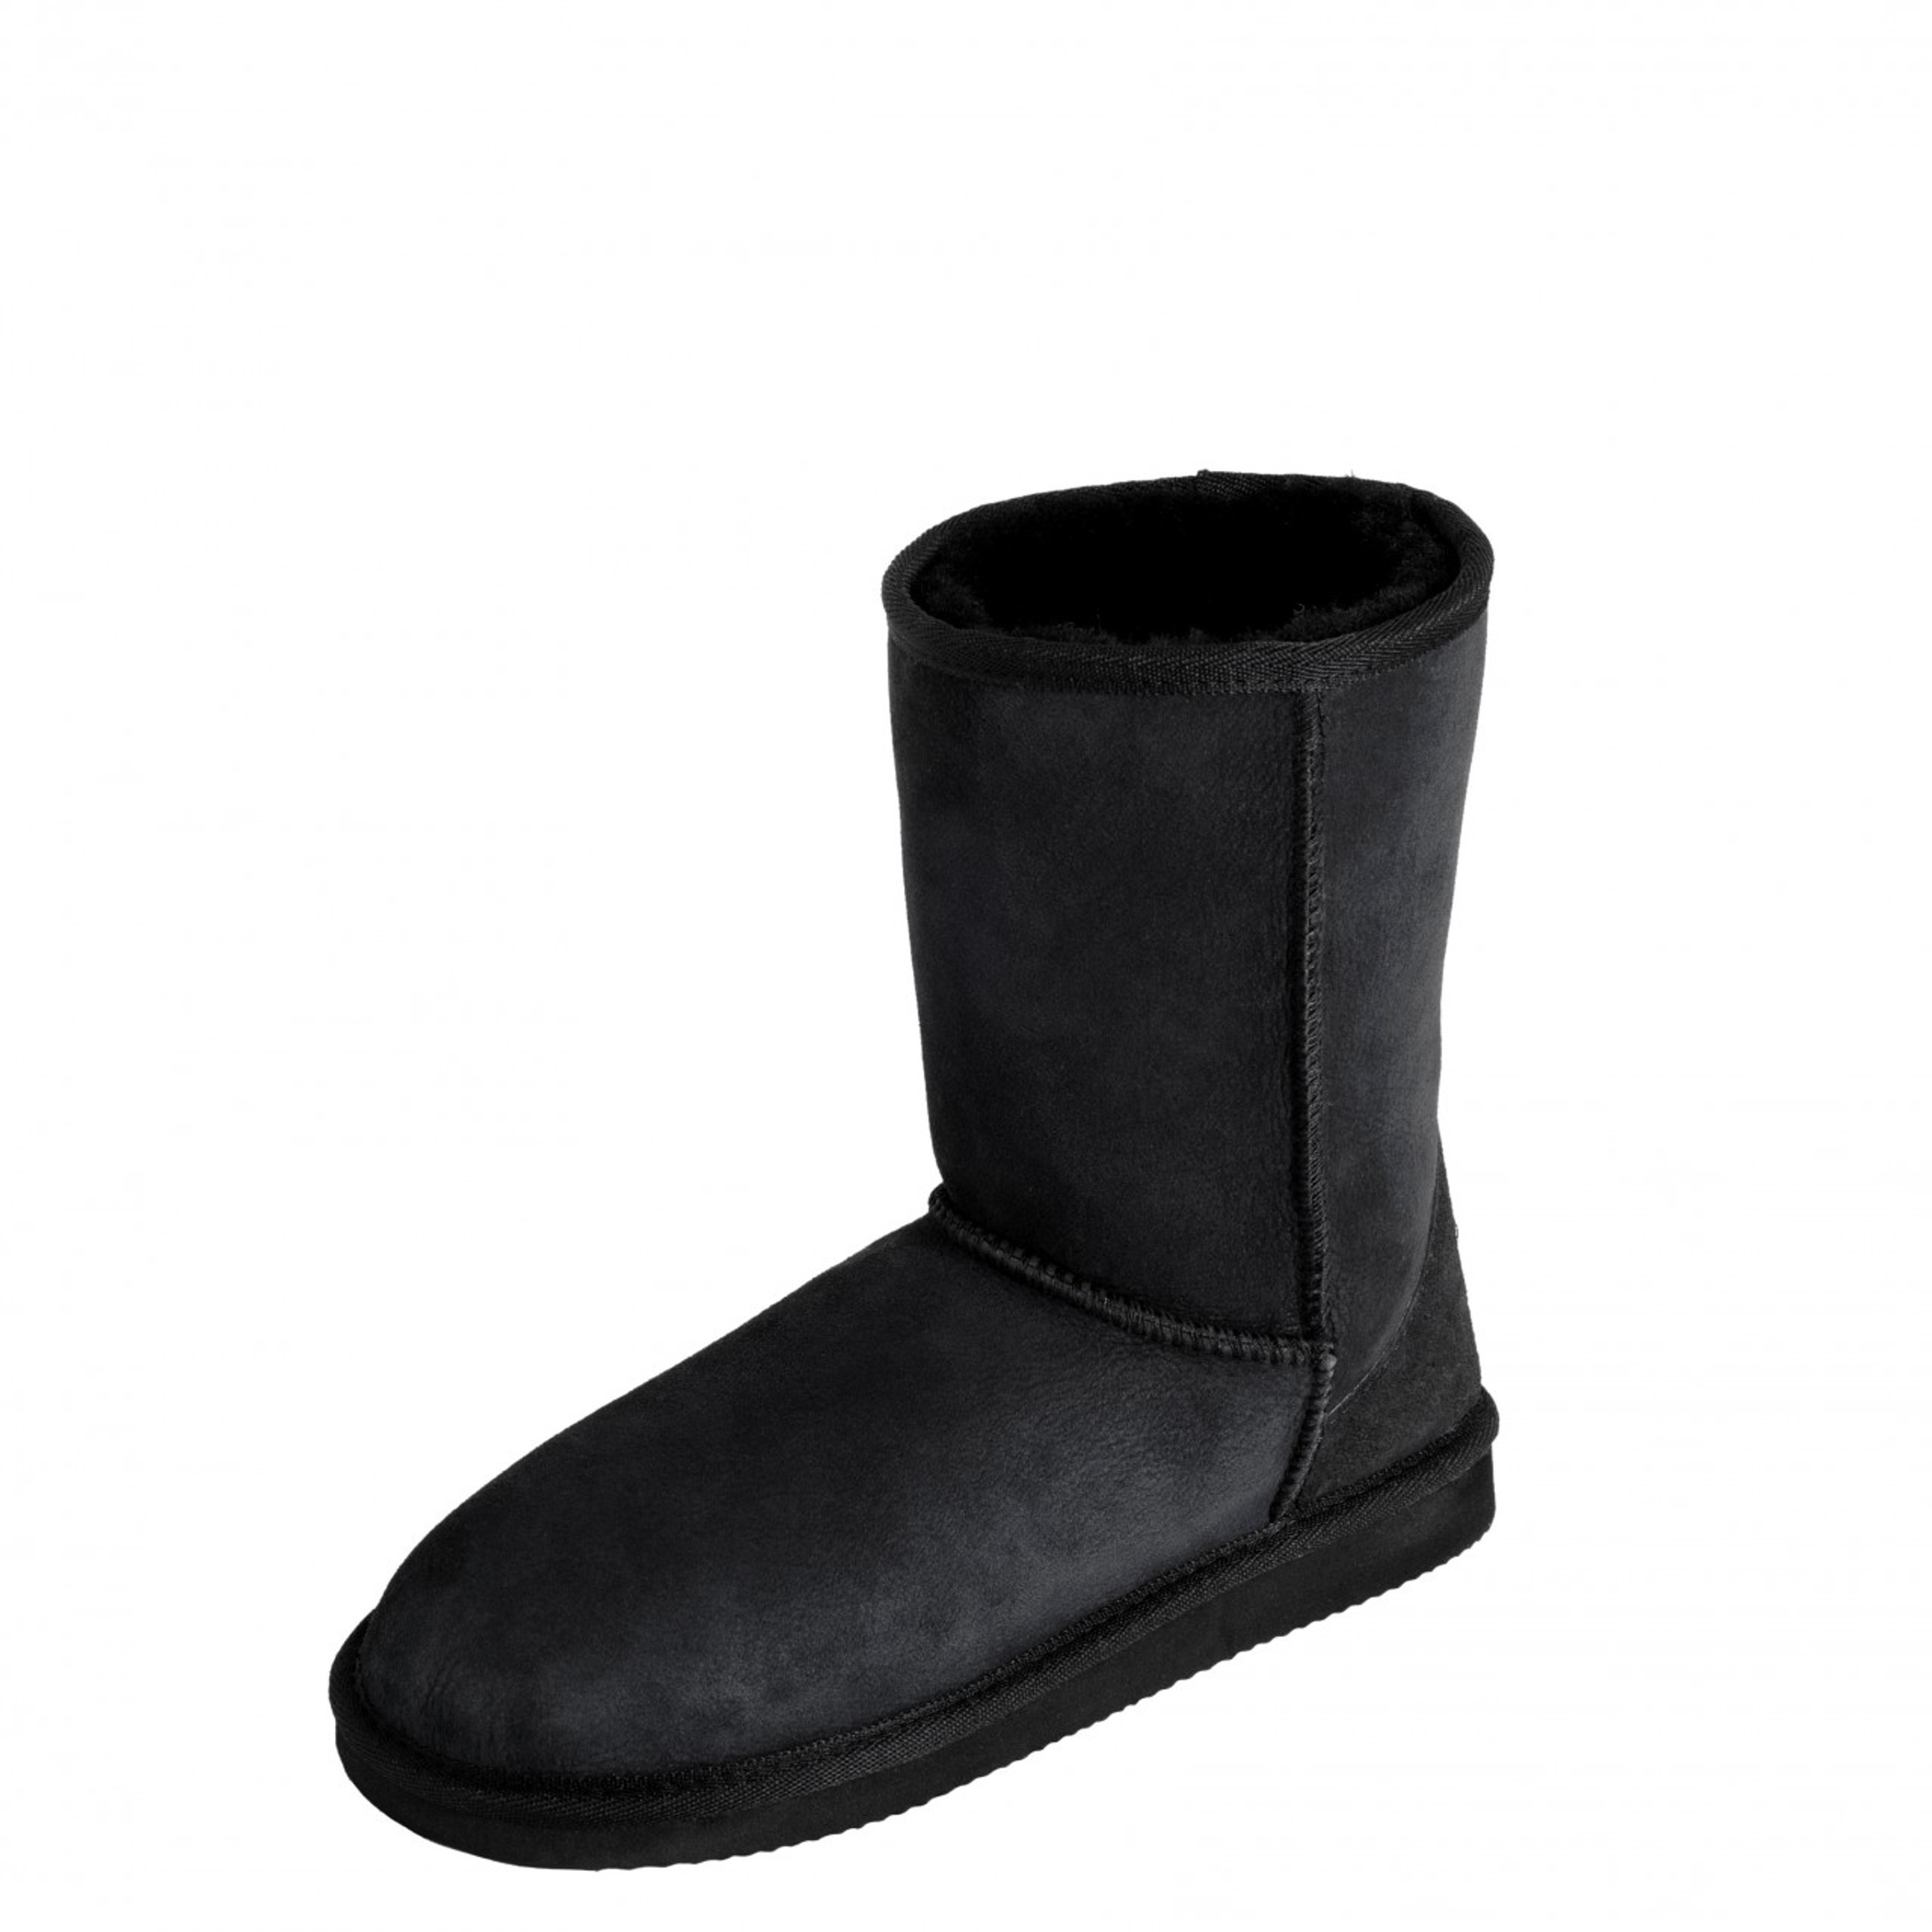 Mi Woollies Original Short Ugg Boots - Online Shopping